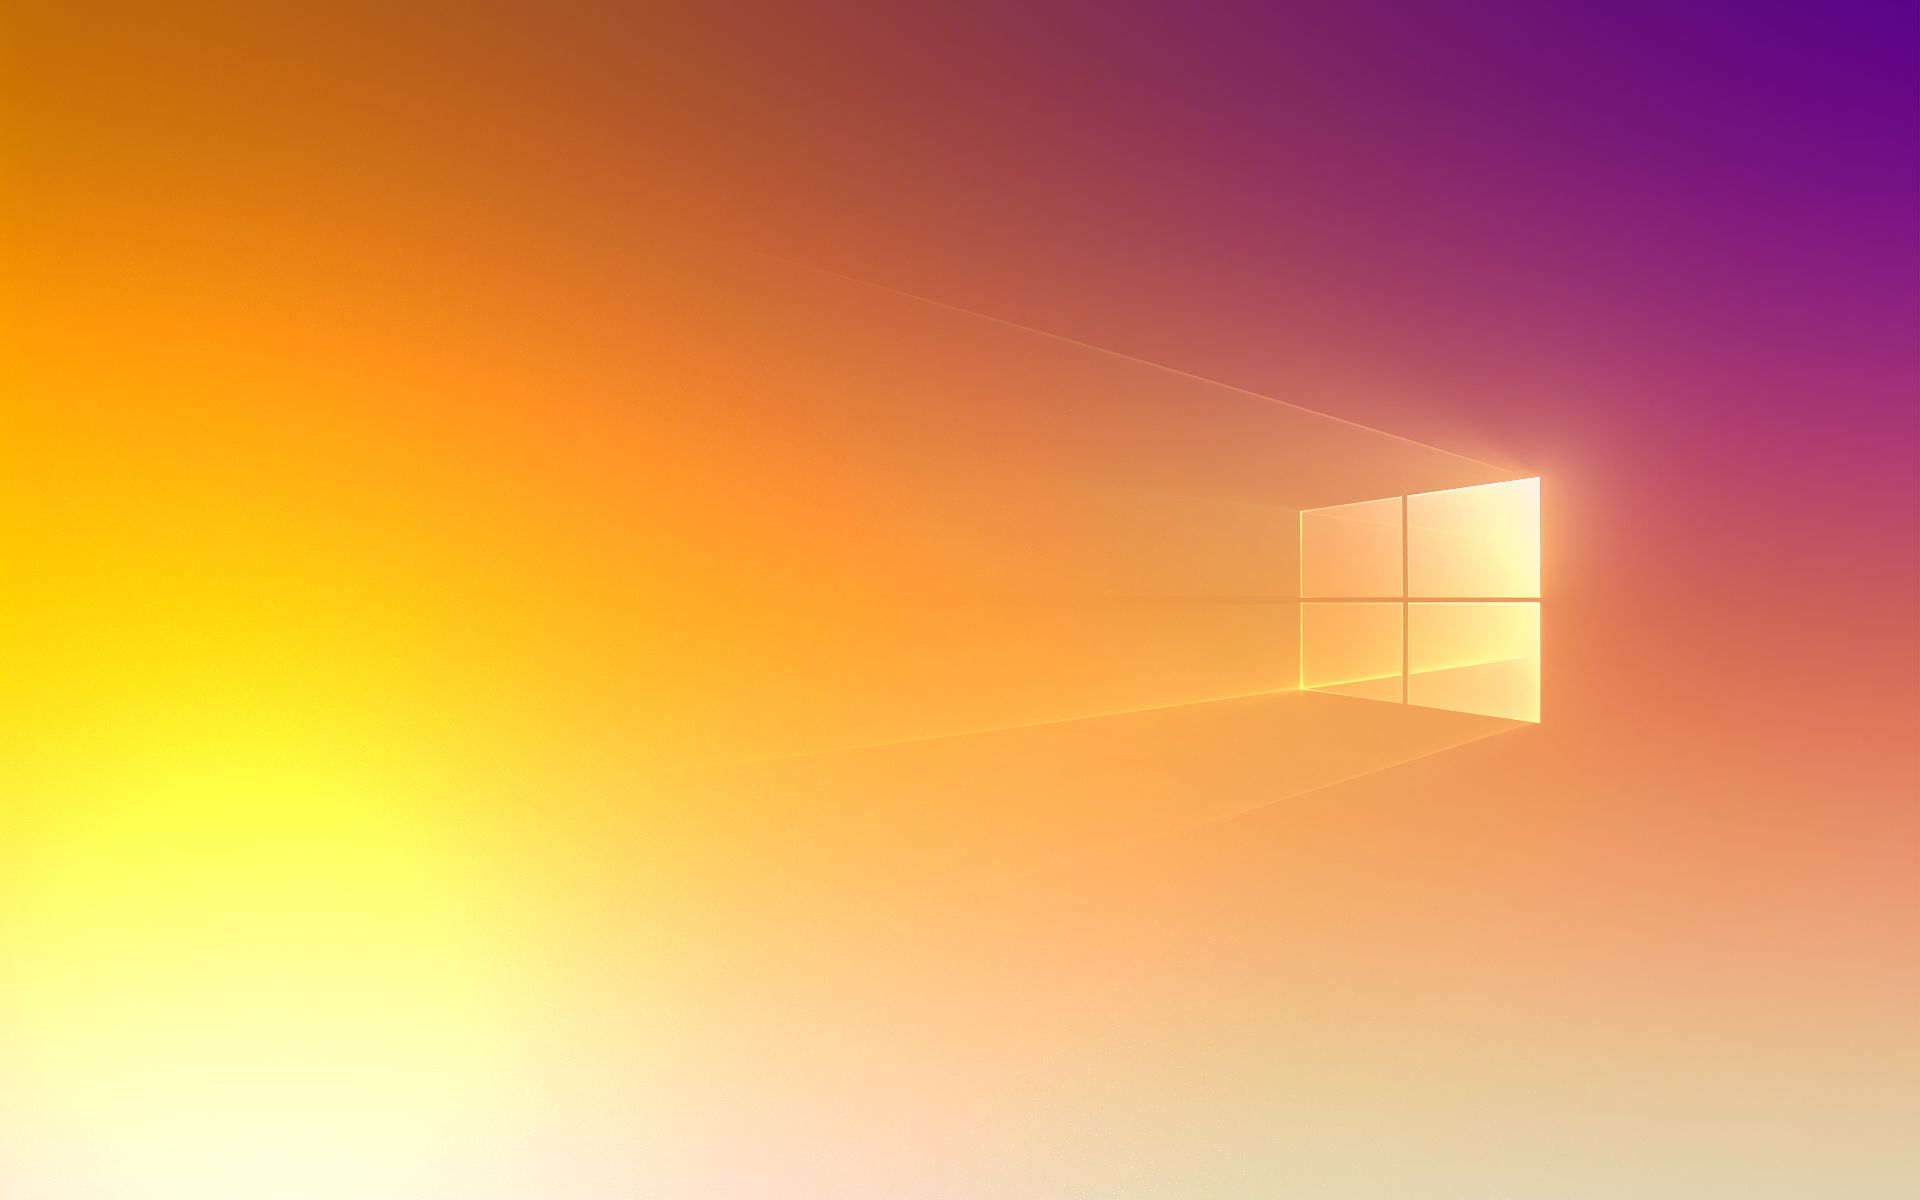 Chắc chắn là không có gì tuyệt vời hơn khi sử dụng hình nền máy tính cam trên Windows 10 đúng không nào? Hãy ghé thăm trang Wallpaper Cave để tìm những hình nền độc đáo và phù hợp với phong cách của bạn.